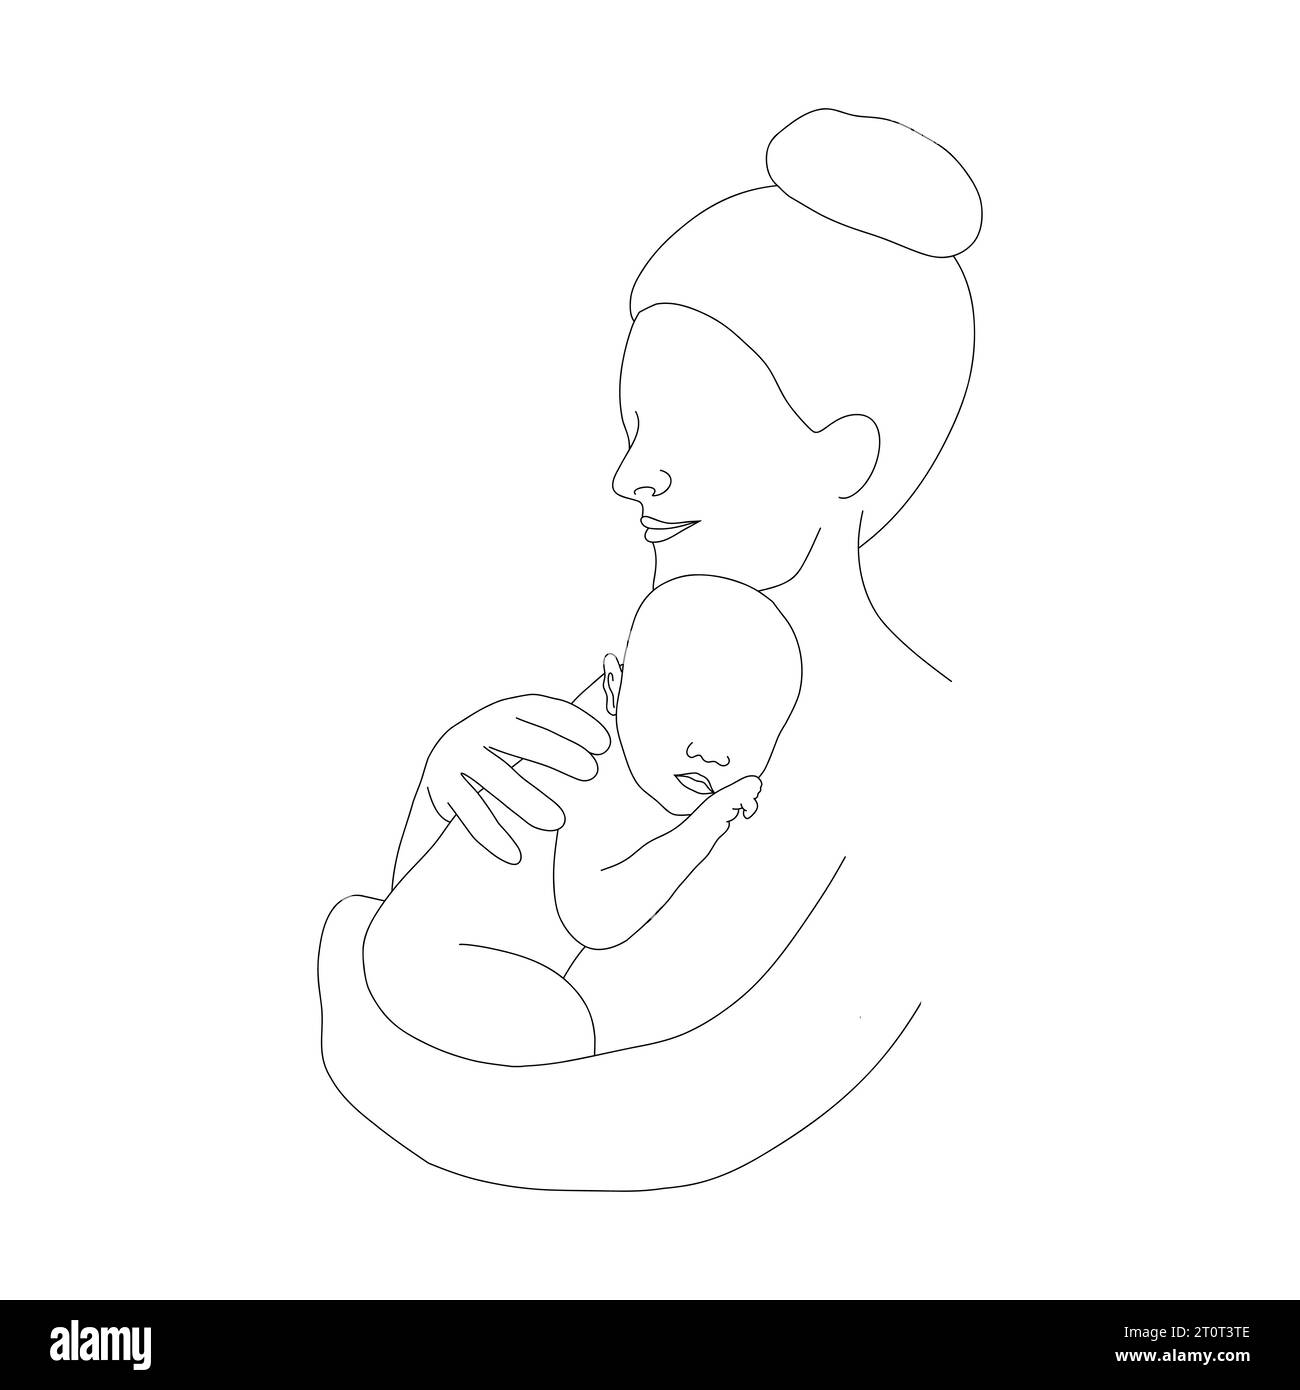 Mutter und Kind im linearen Stil. Glückliche Mutter umarmt ihr neugeborenes Baby. Einzeilige Art. Minimalistische Vektorillustration. Abstrakte Silhouette der Familie Stock Vektor